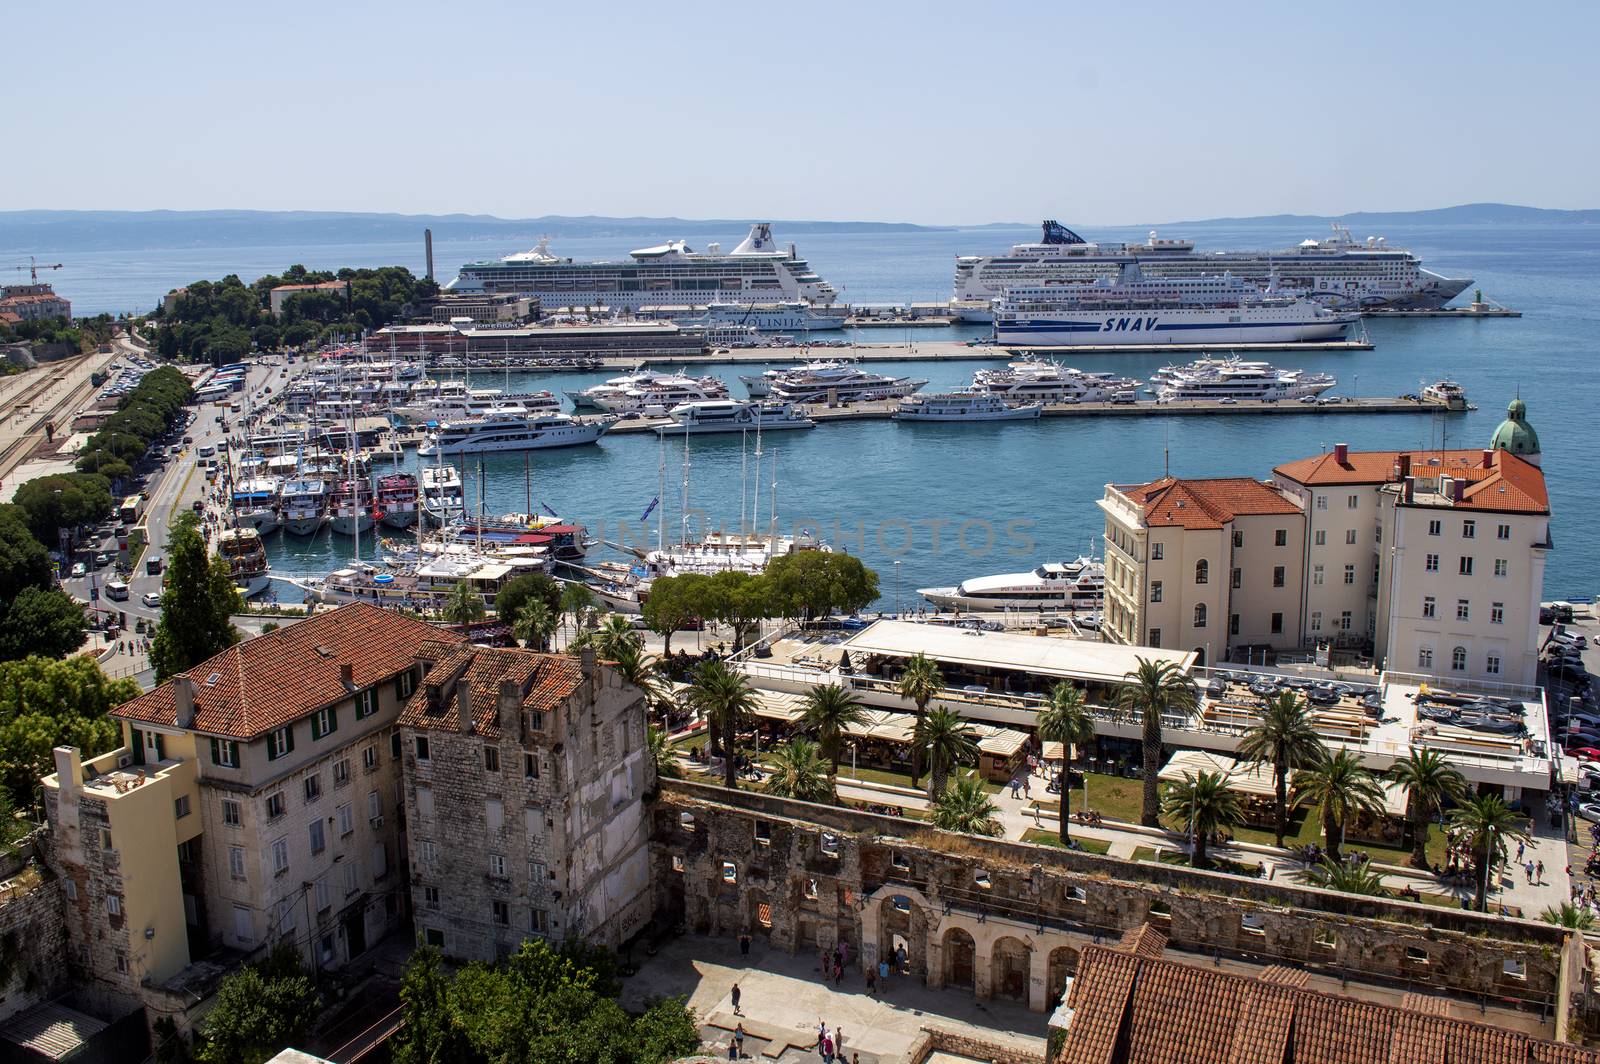 Split city harbor in Croatia in summer.